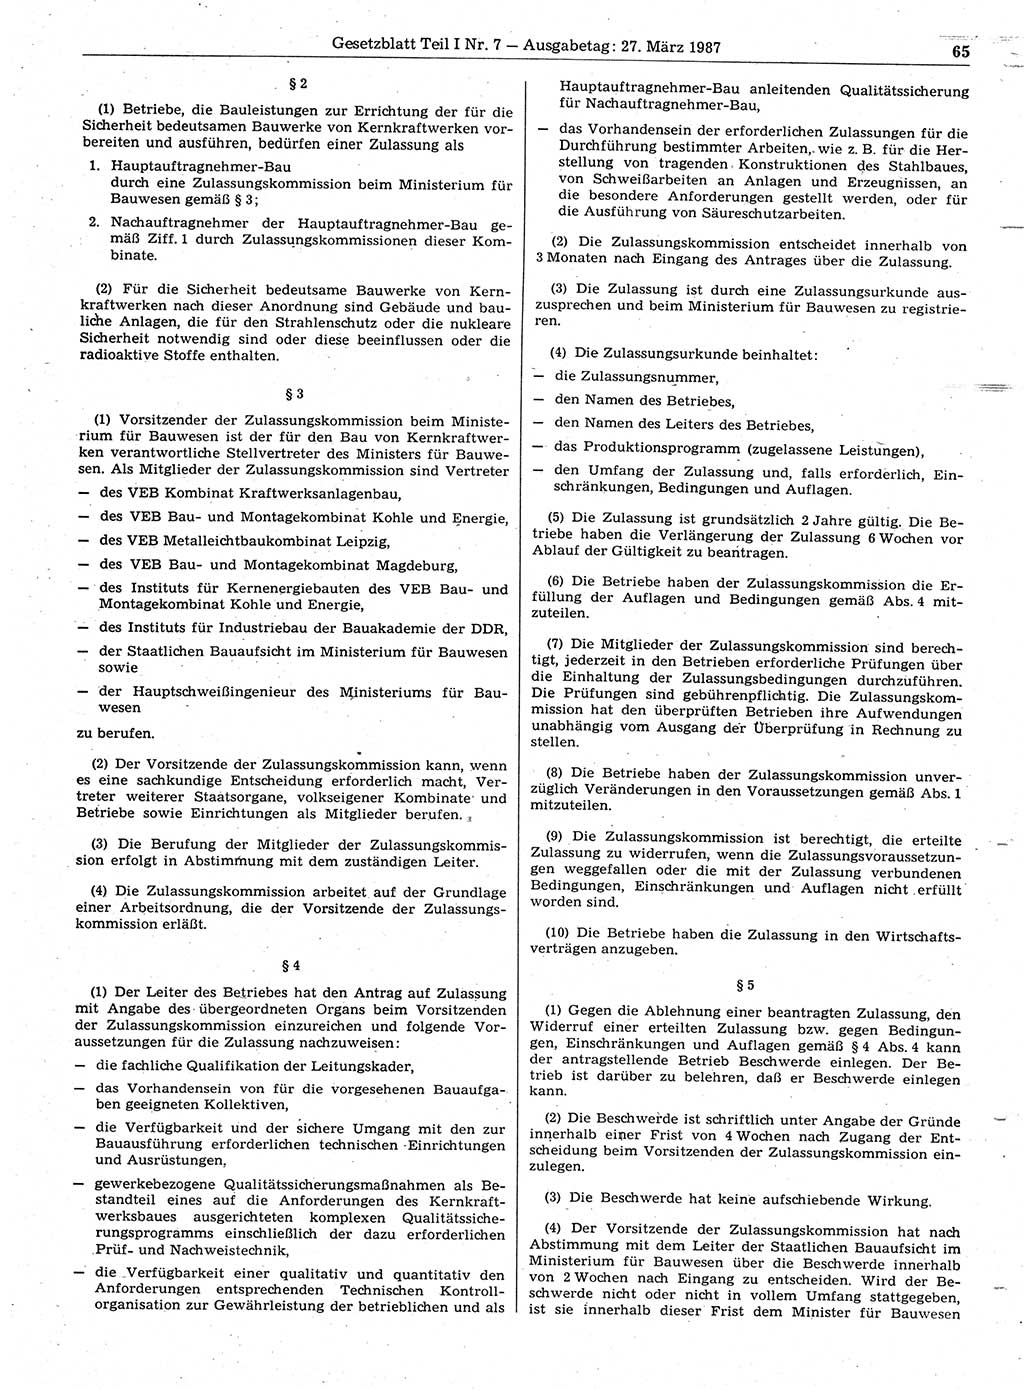 Gesetzblatt (GBl.) der Deutschen Demokratischen Republik (DDR) Teil Ⅰ 1987, Seite 65 (GBl. DDR Ⅰ 1987, S. 65)